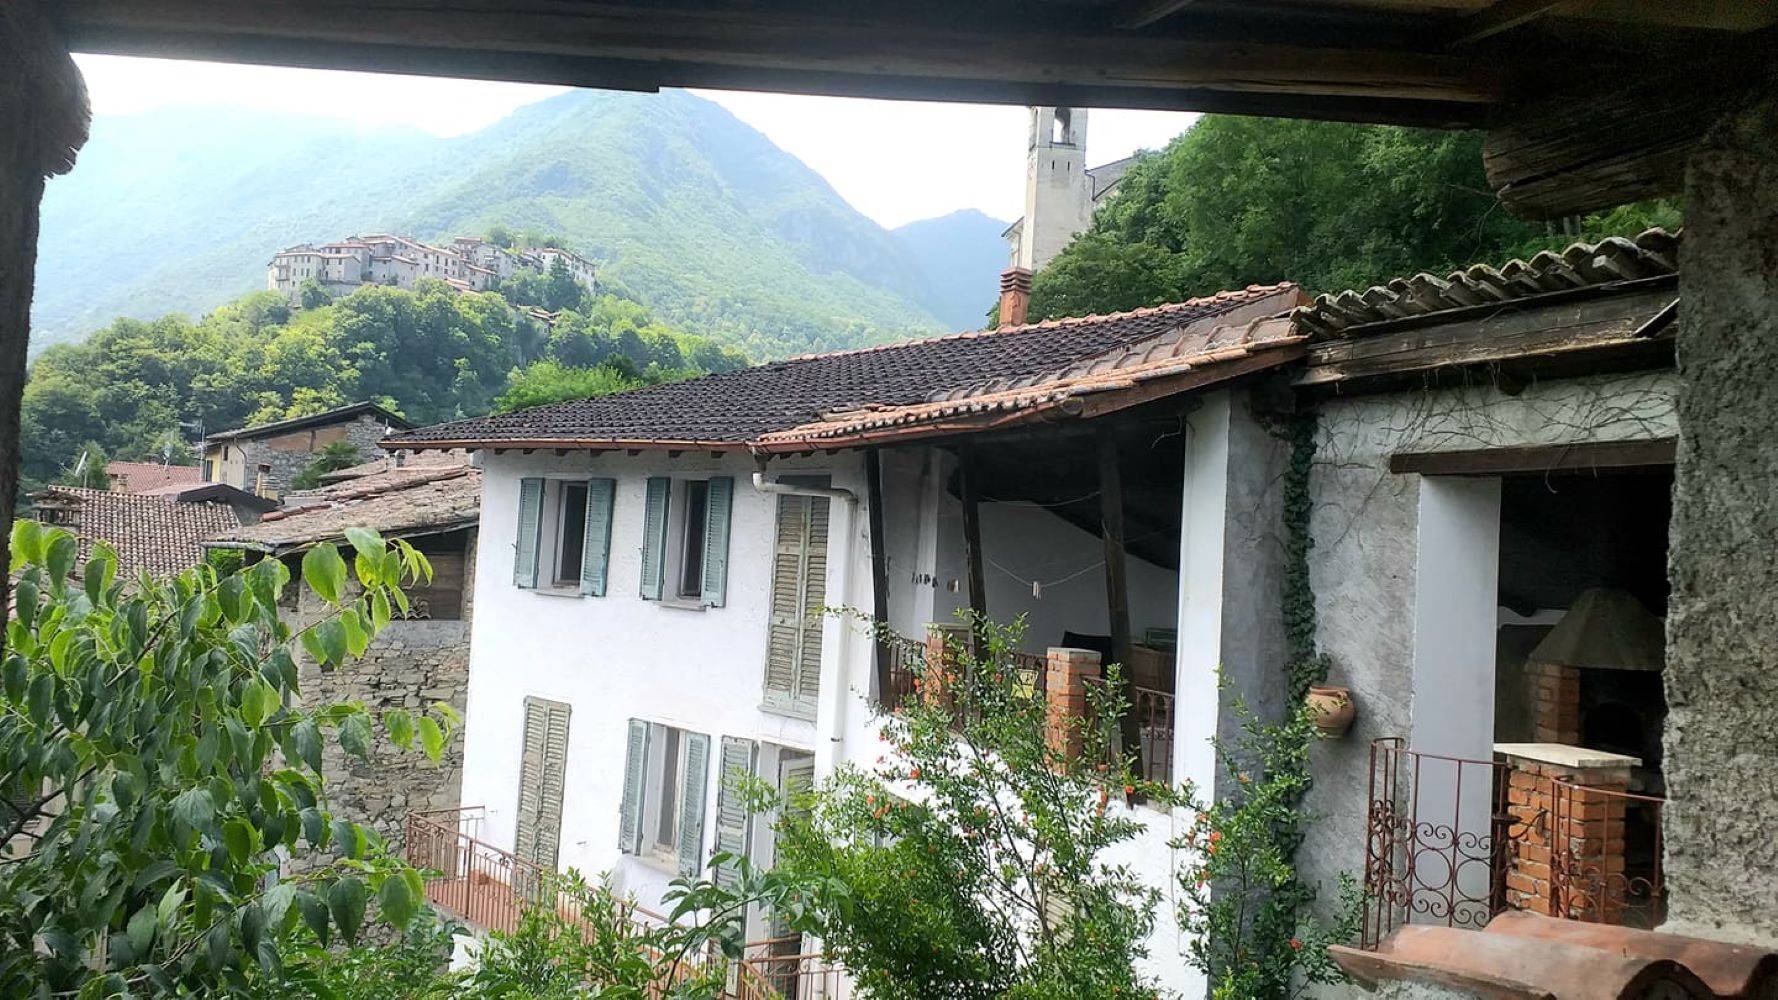 Rustico / Casale in vendita a Valsolda, 8 locali, zona io, prezzo € 60.000 | PortaleAgenzieImmobiliari.it